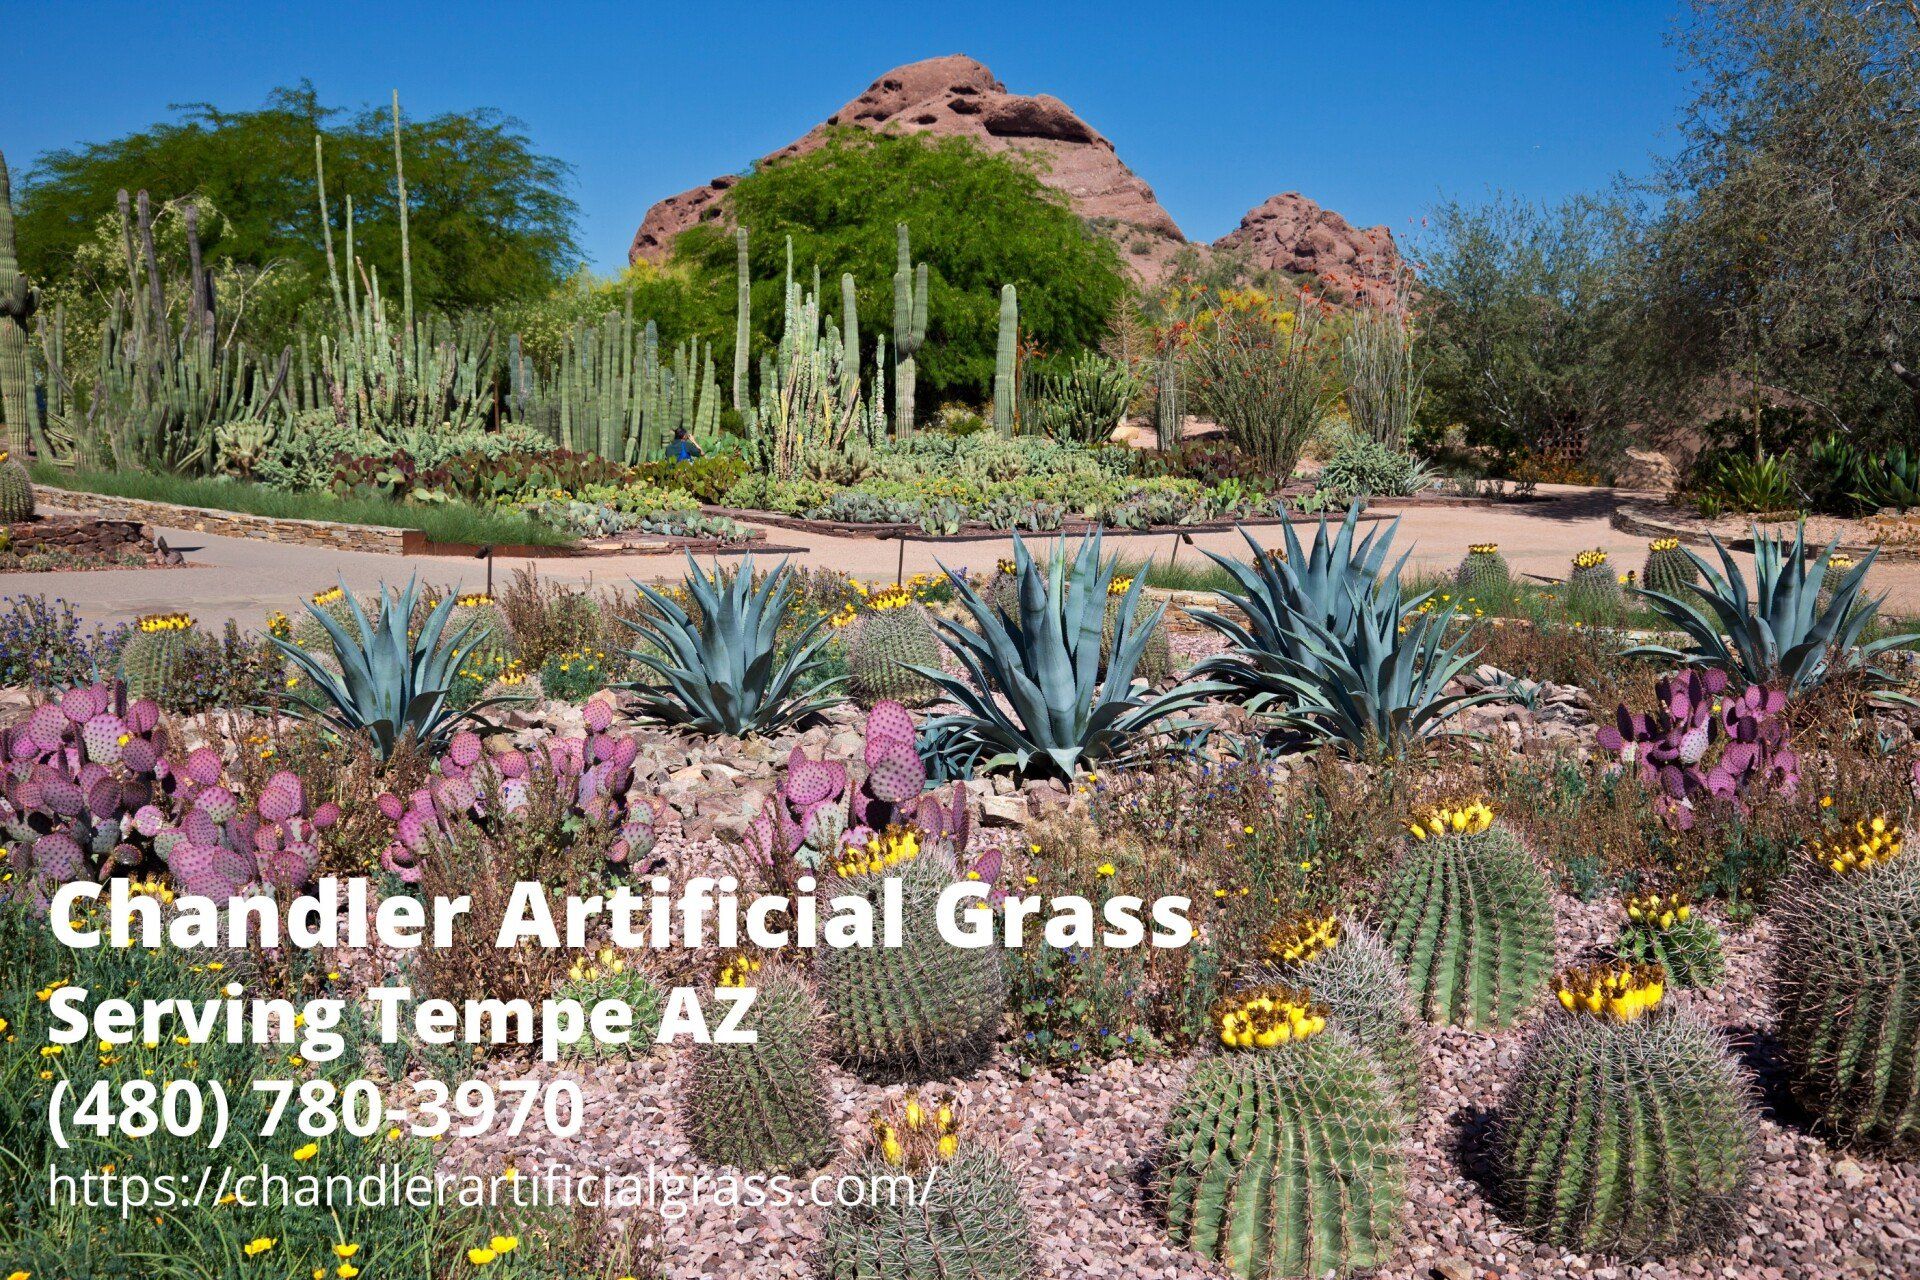 Chandler Artificial Grass' business info in the photo of the Desert Botanical Garden